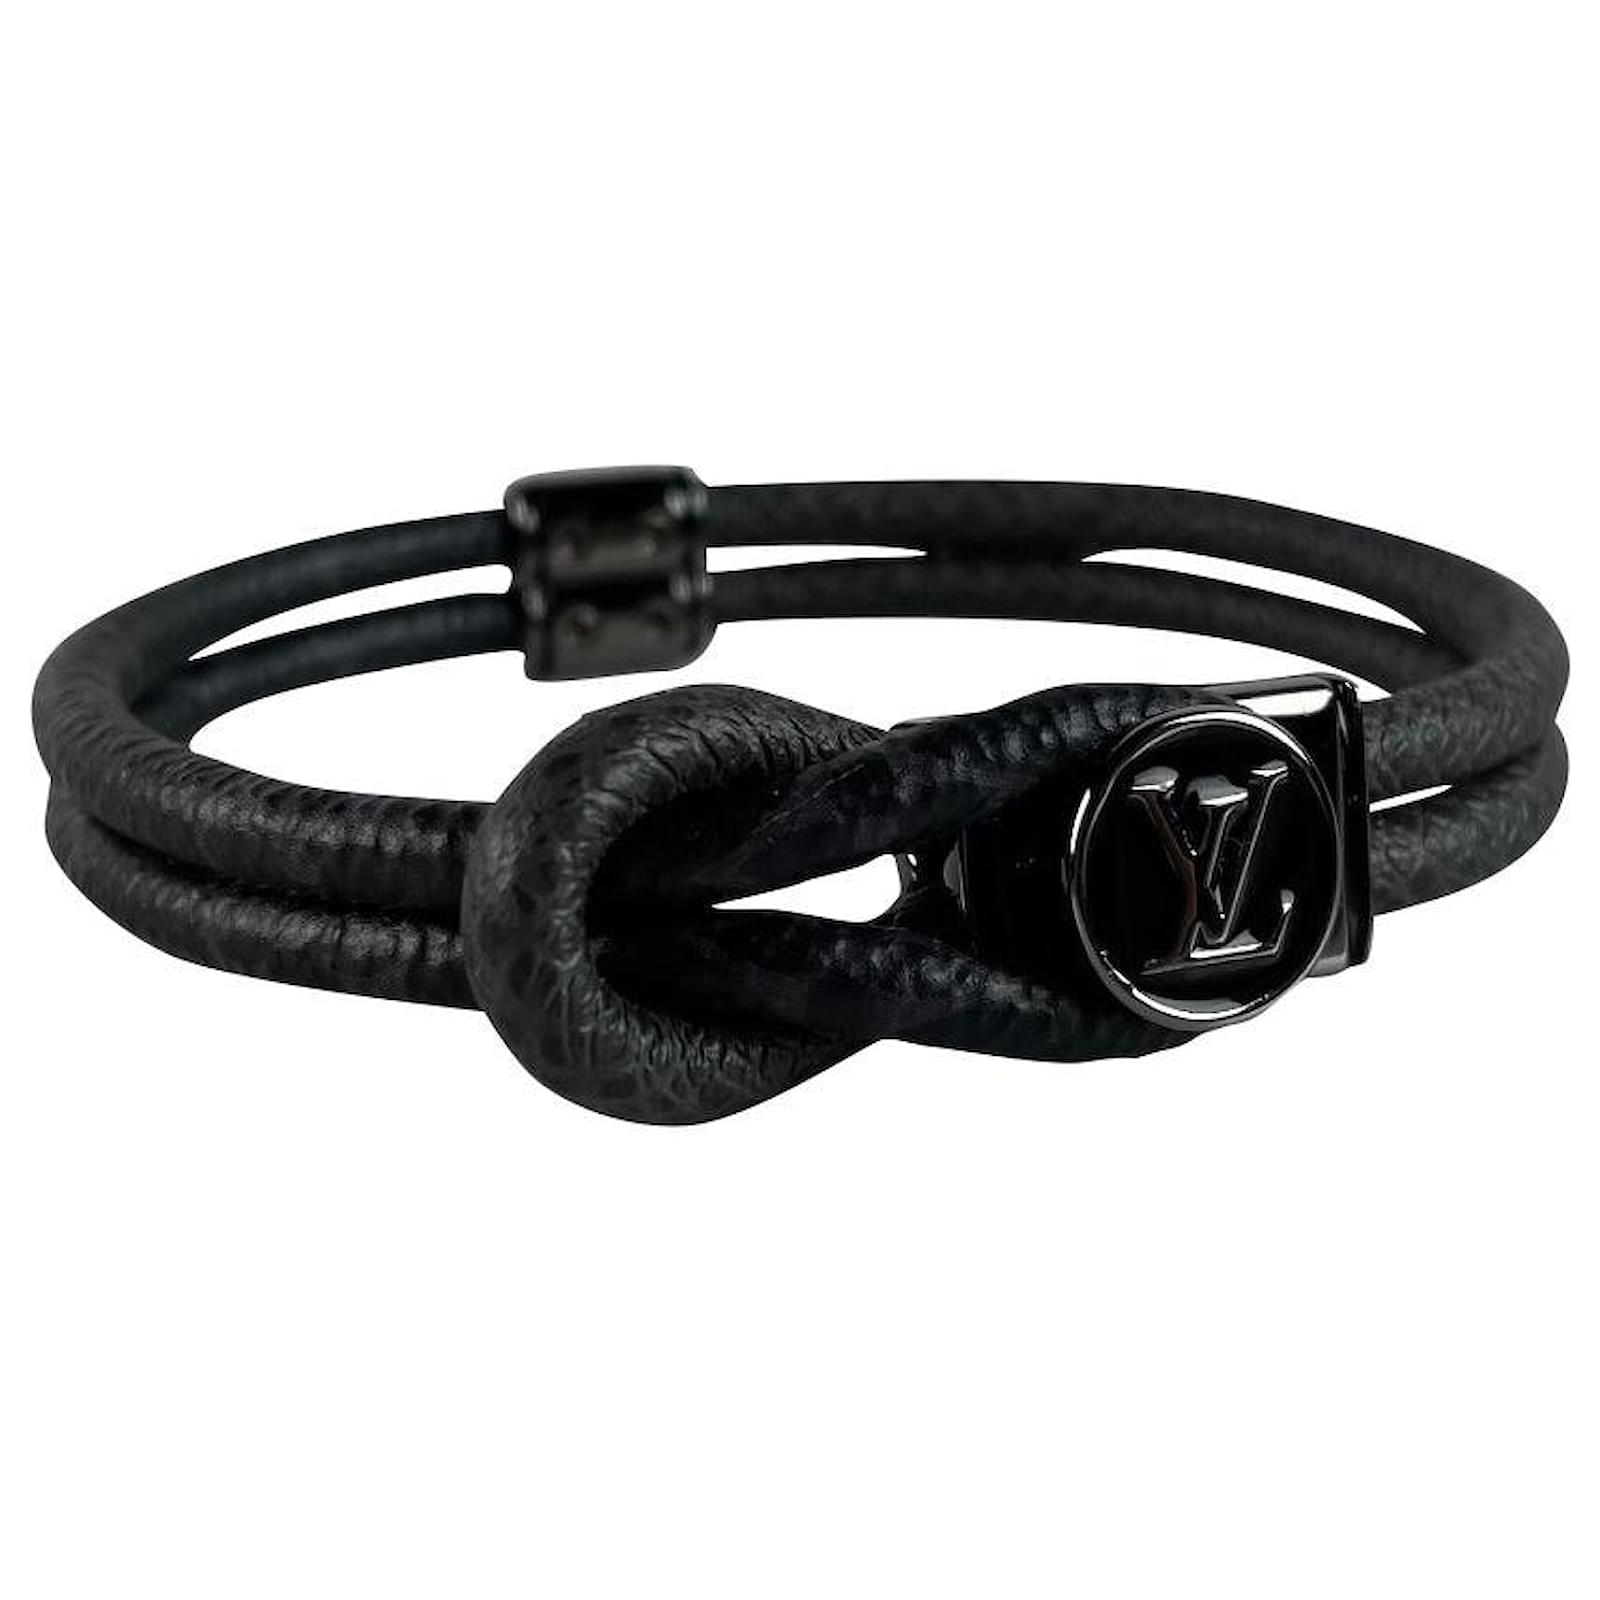 LV Loop It Bracelet